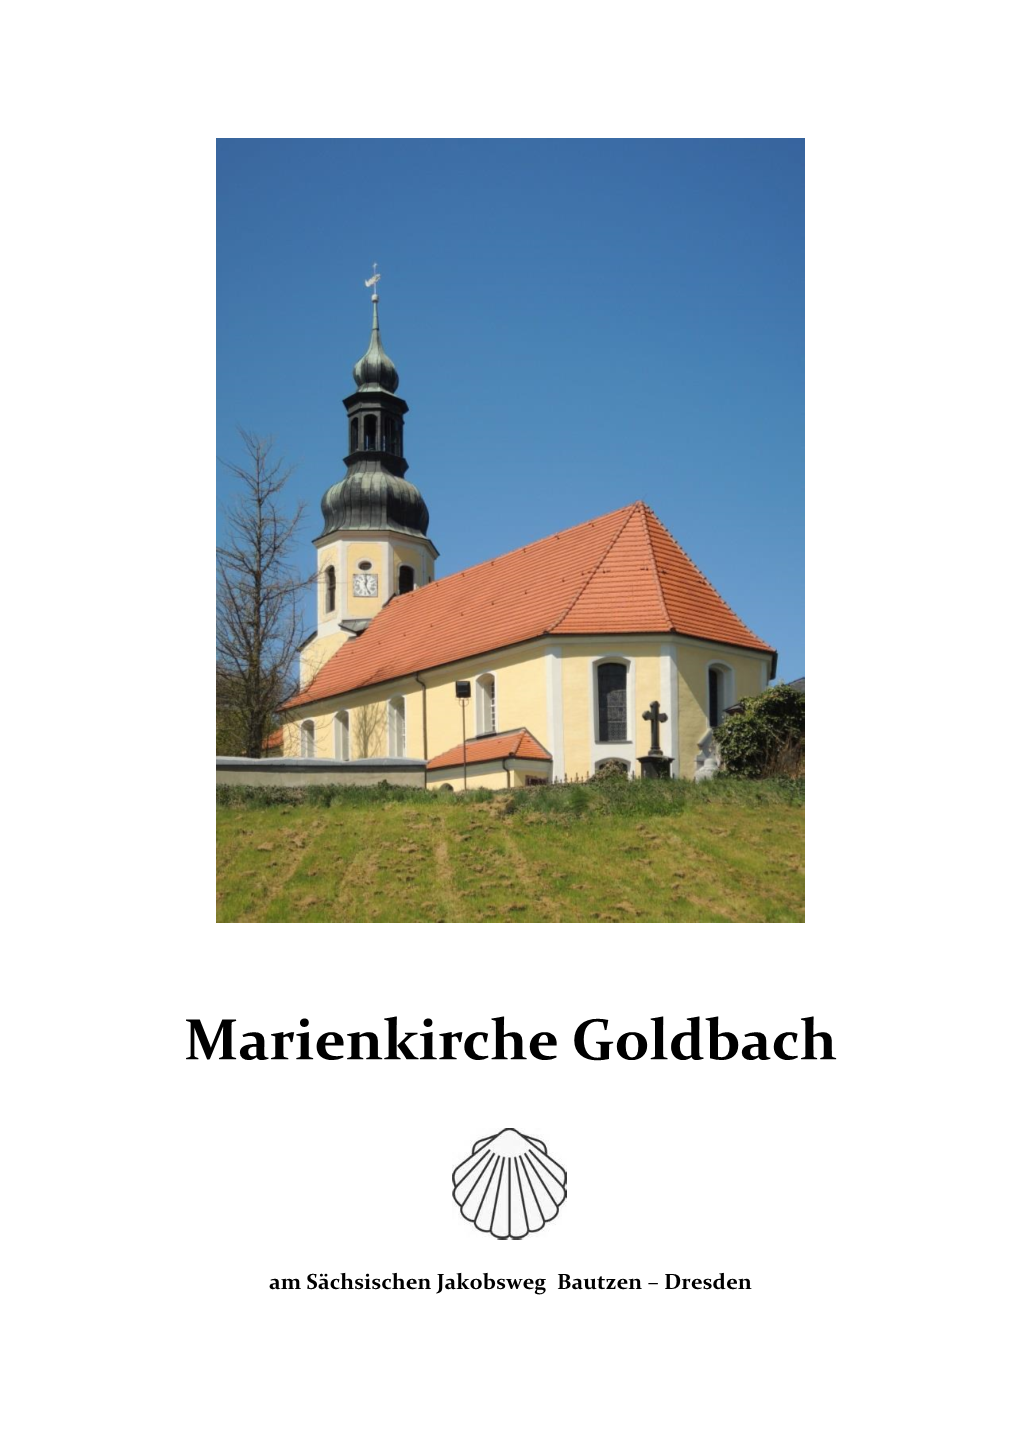 Marienkirche Goldbach